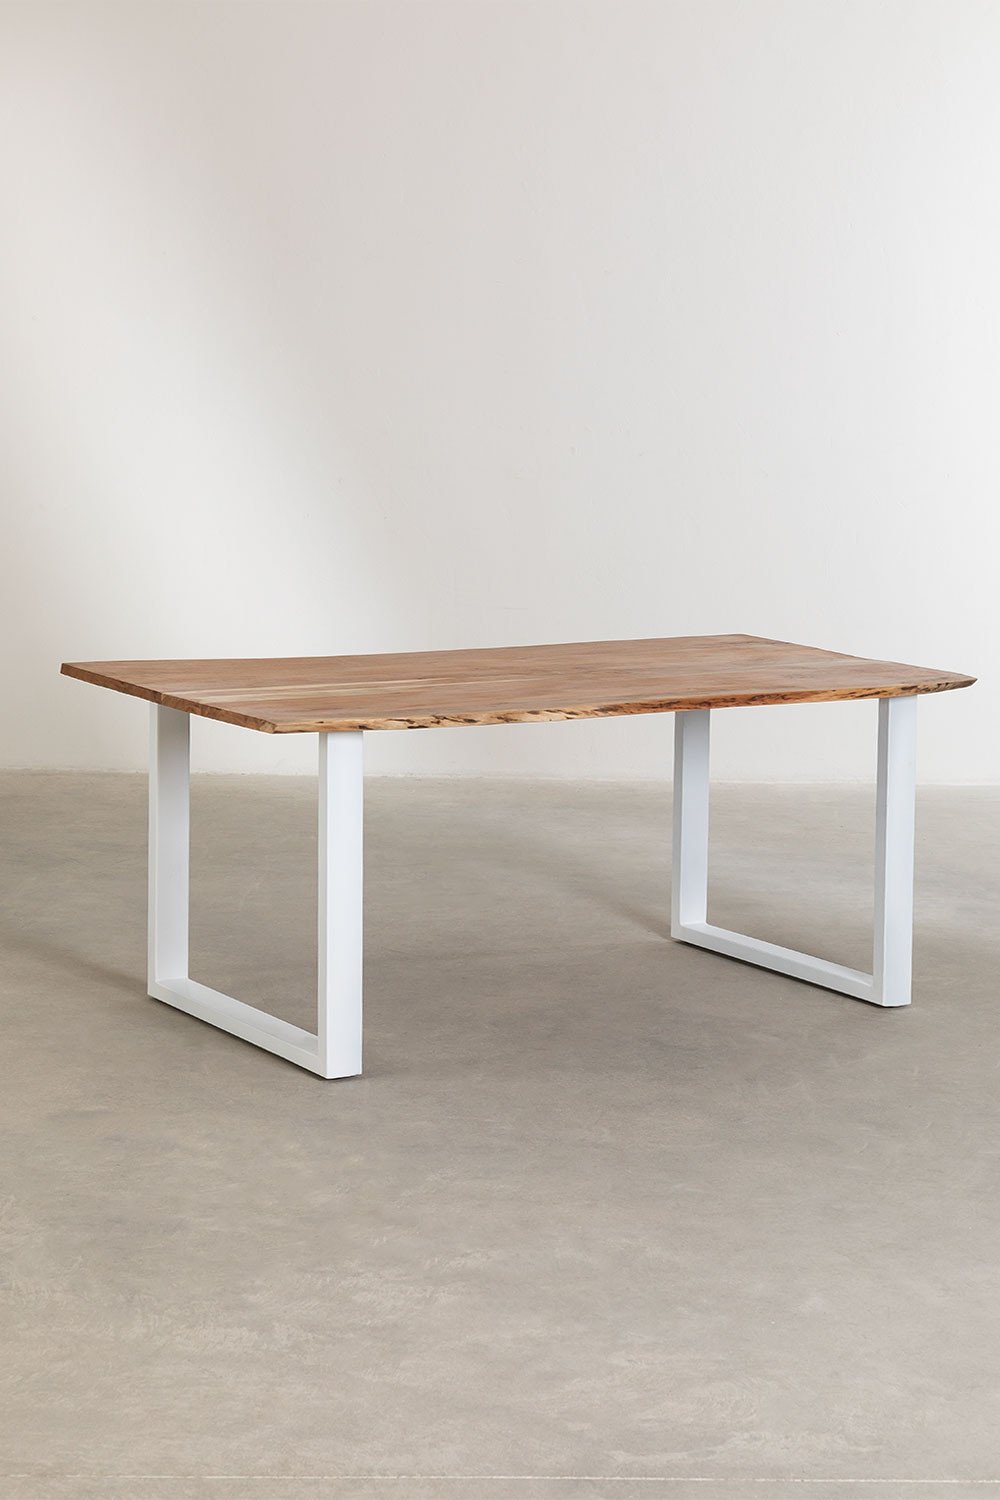 Prostokątny stół do jadalni z drewna pochodzącego z recyklingu (180x100 cm) w stylu Sami, obrazek w galerii 2